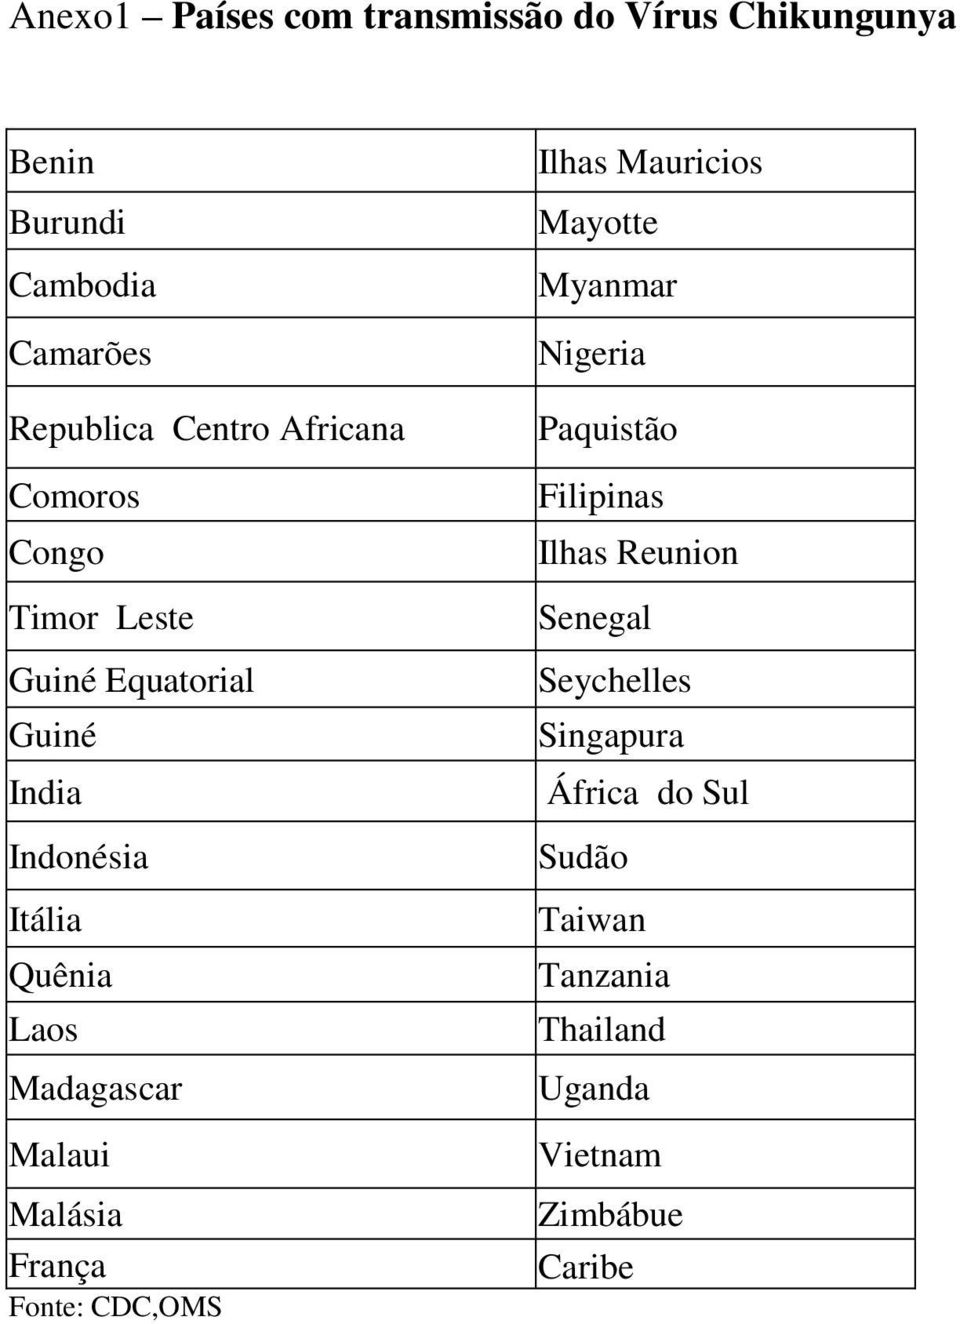 Malaui Malásia França Fonte: CDC,OMS Ilhas Mauricios Mayotte Myanmar Nigeria Paquistão Filipinas Ilhas